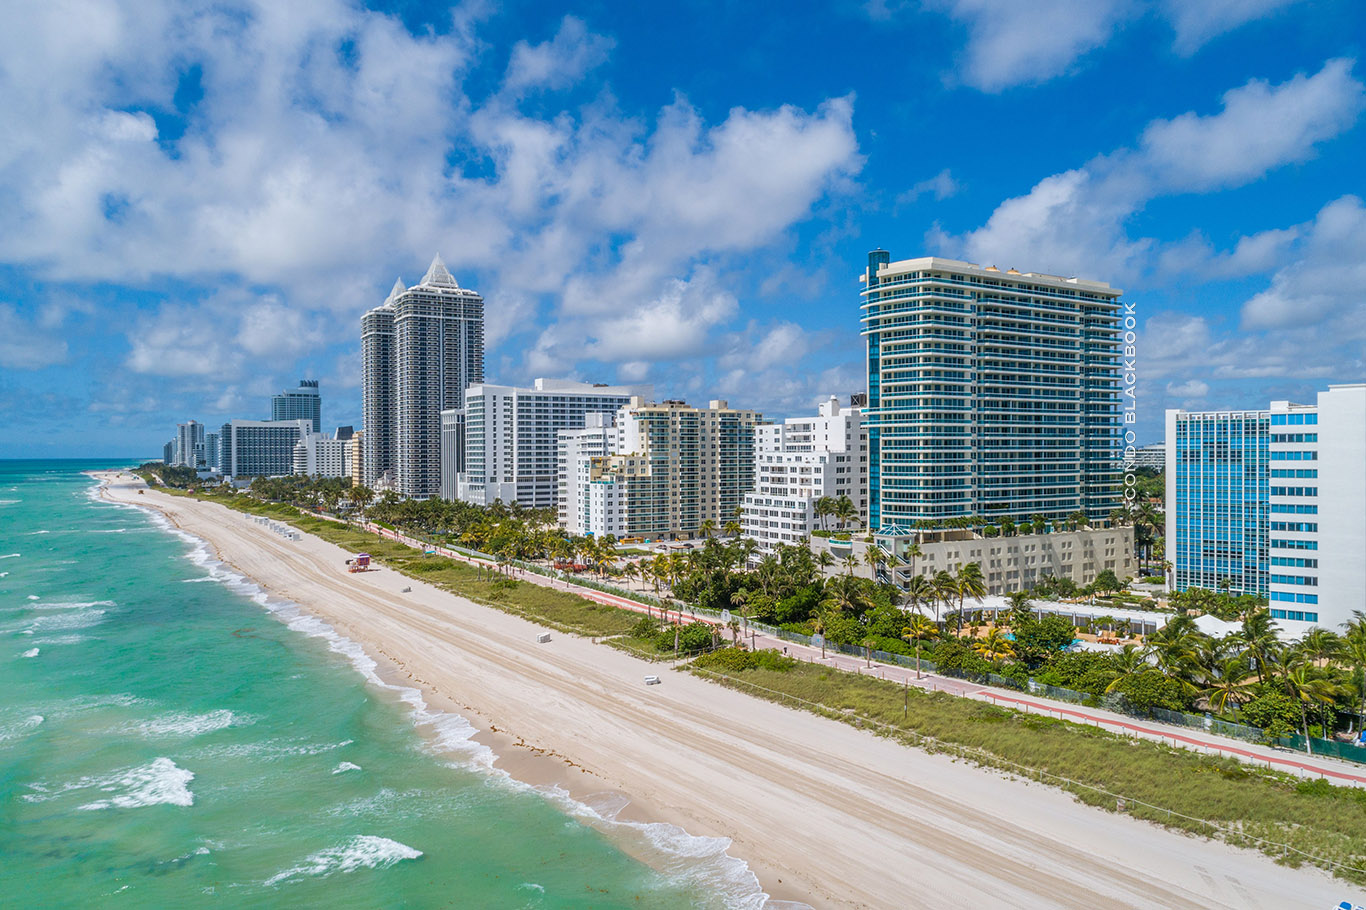 Capobella Condos for Sale and Rent in Mid-Beach - Miami Beach ...